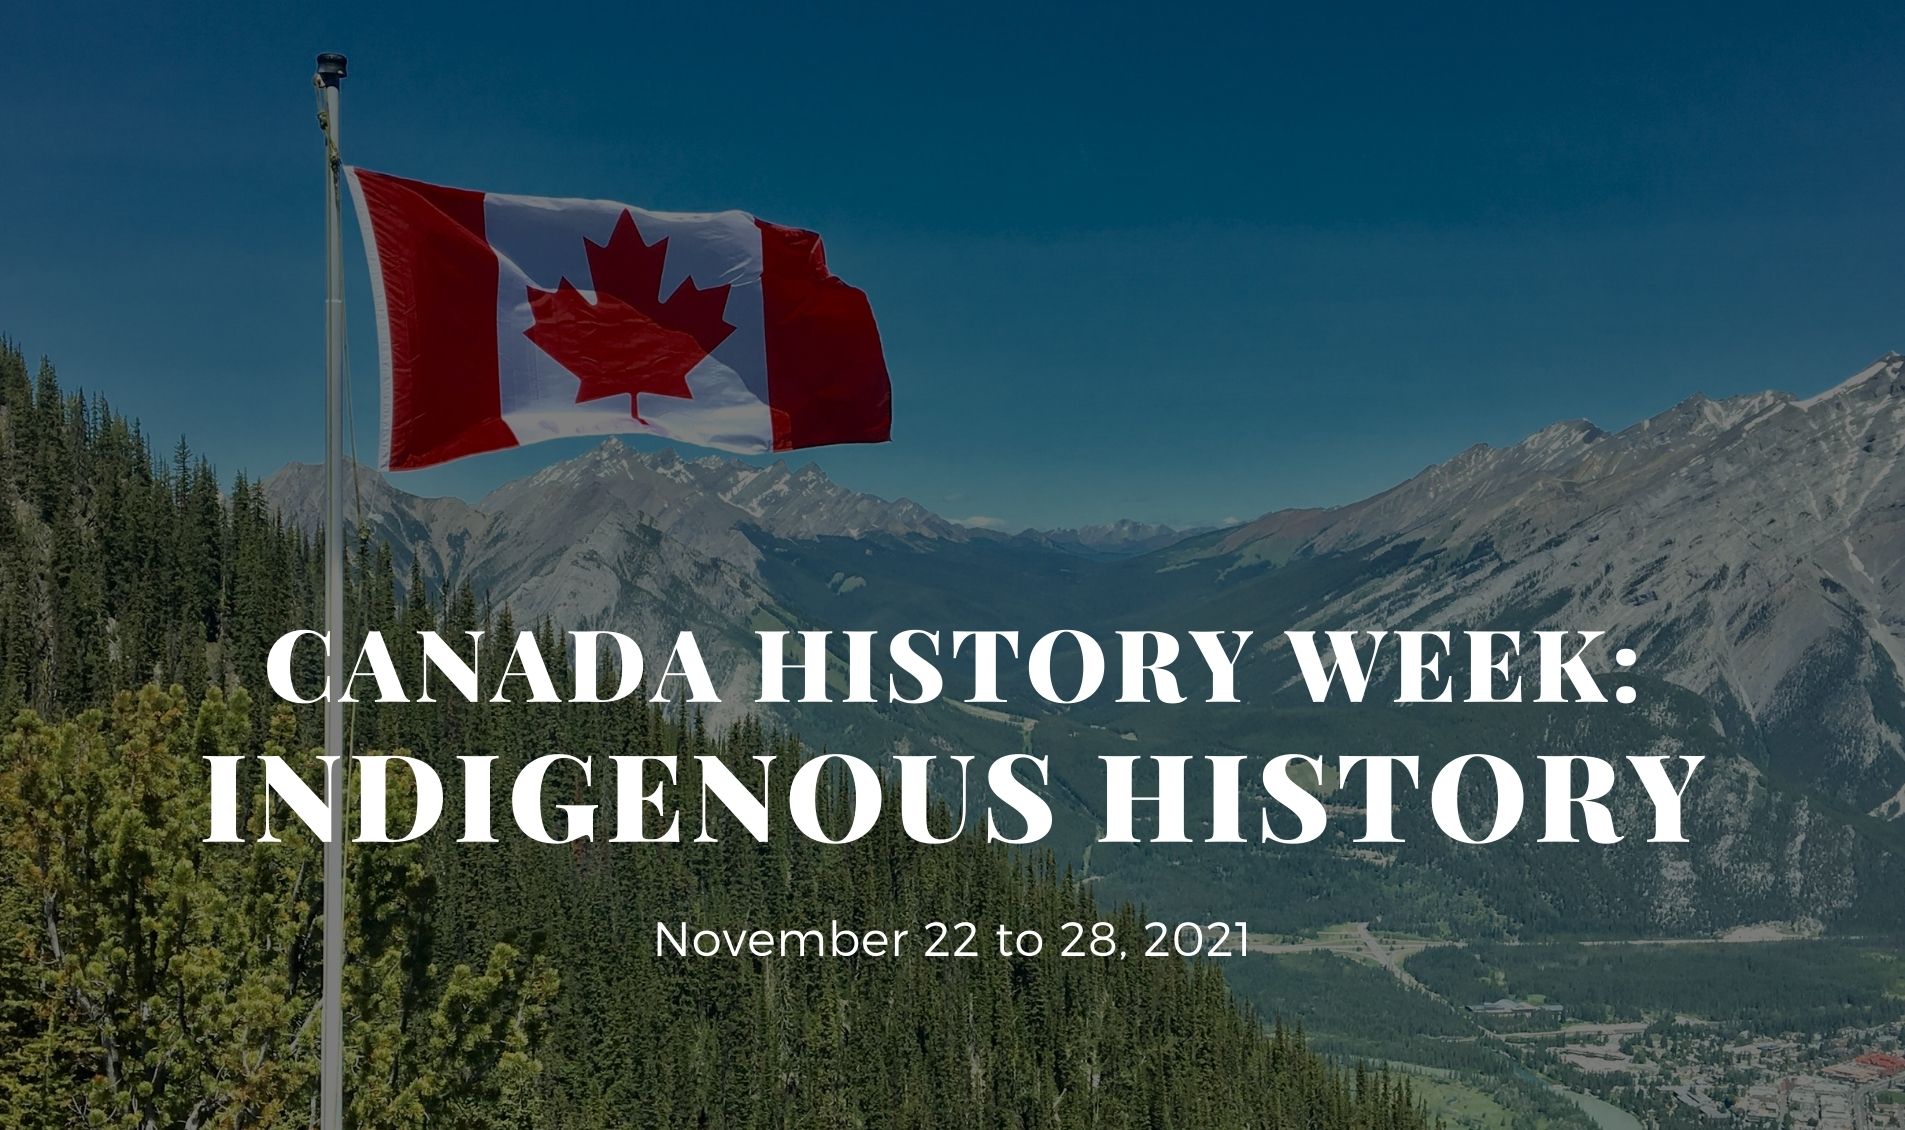 Canada History Week 2021: Indigenous history - November 22 - 28 2021